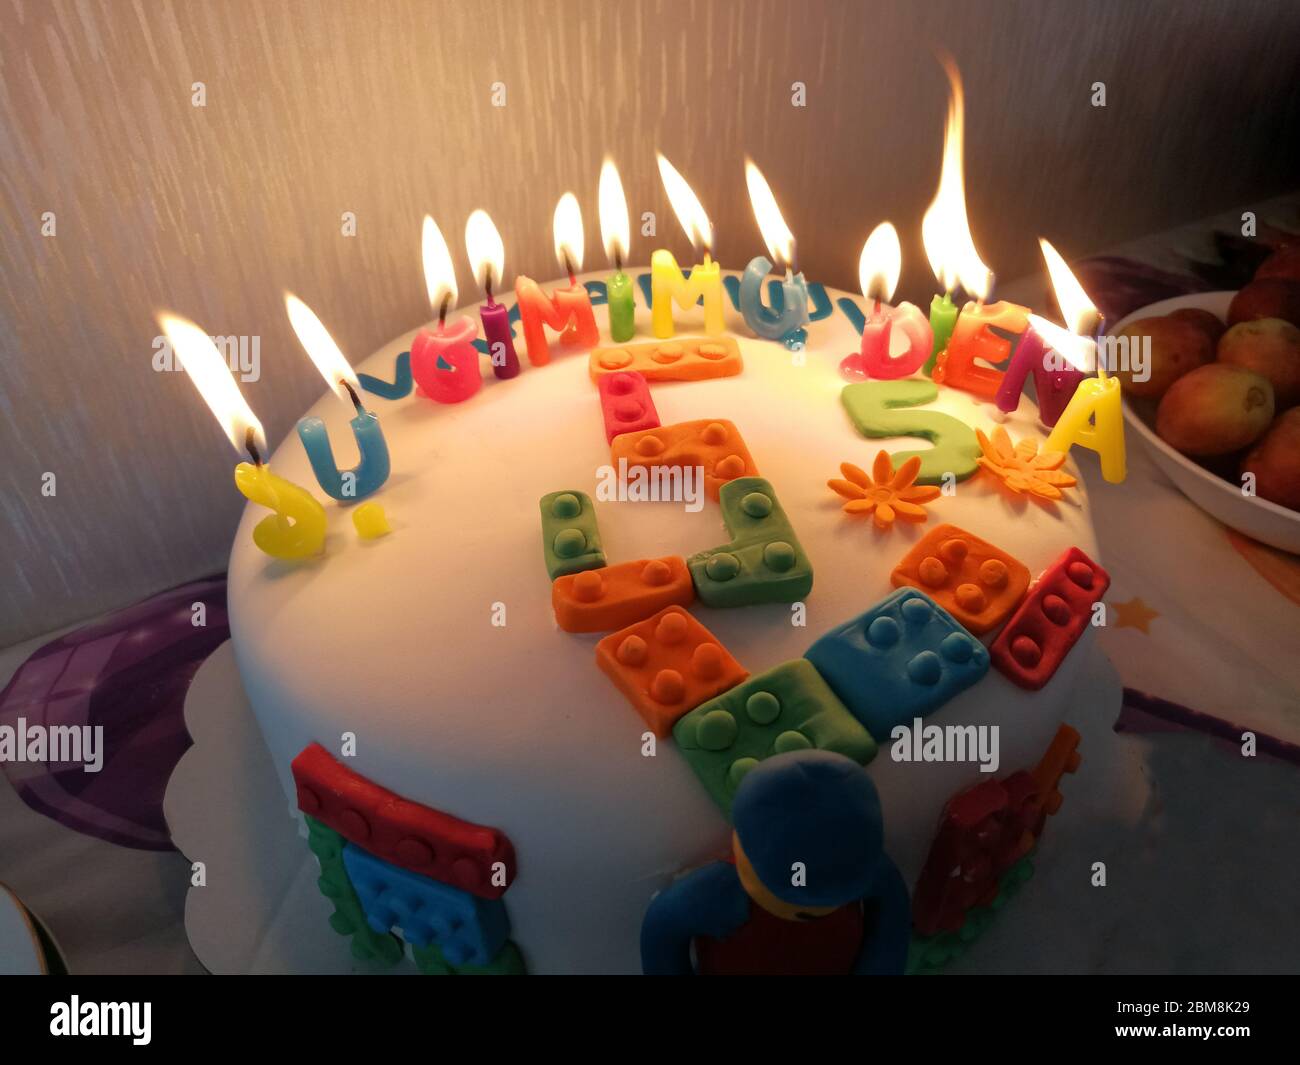 Dolce torta di compleanno di 5 anni con candele sul fuoco e lettere 'su  gimimo diena' ('buon compleanno') in lituano Foto stock - Alamy